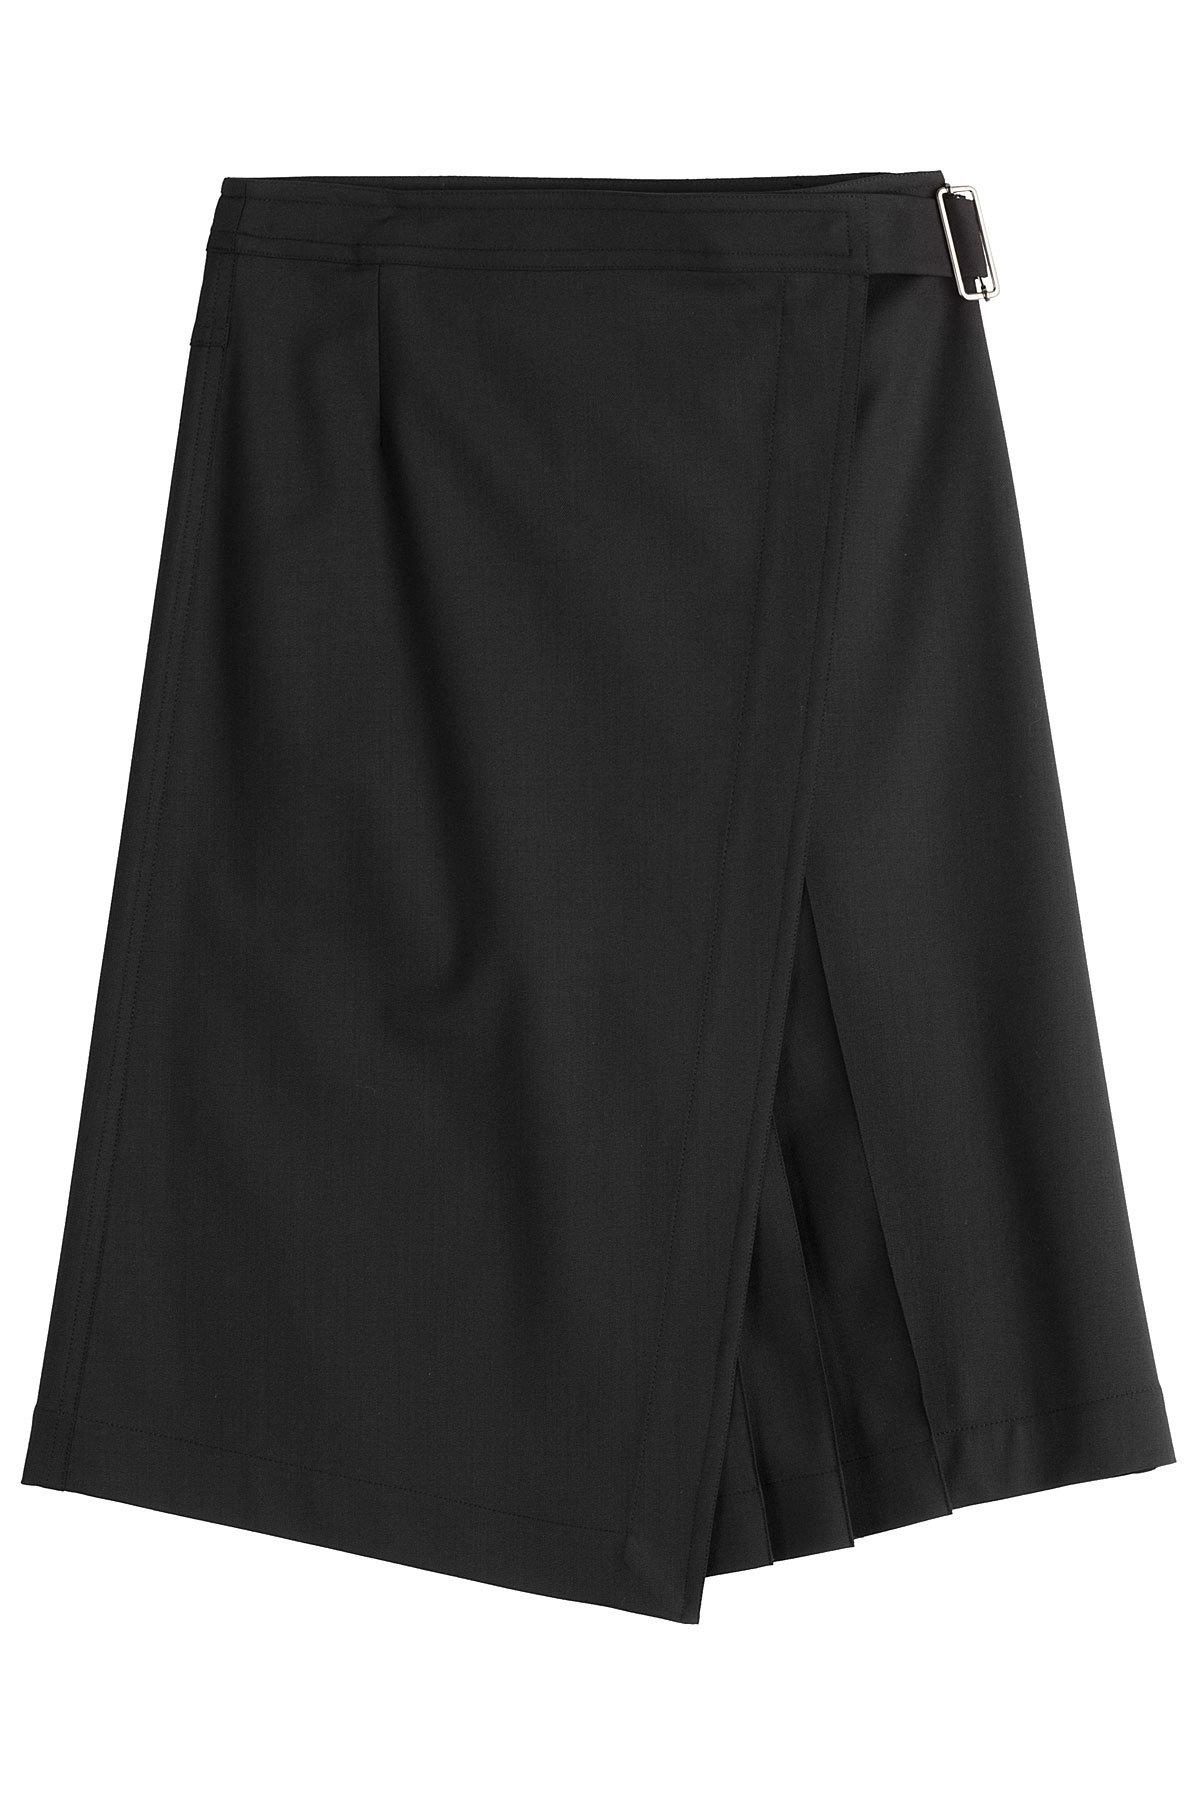 Lyst - Jil Sander Navy Skirt With Virgin Wool in Black - Save 21%